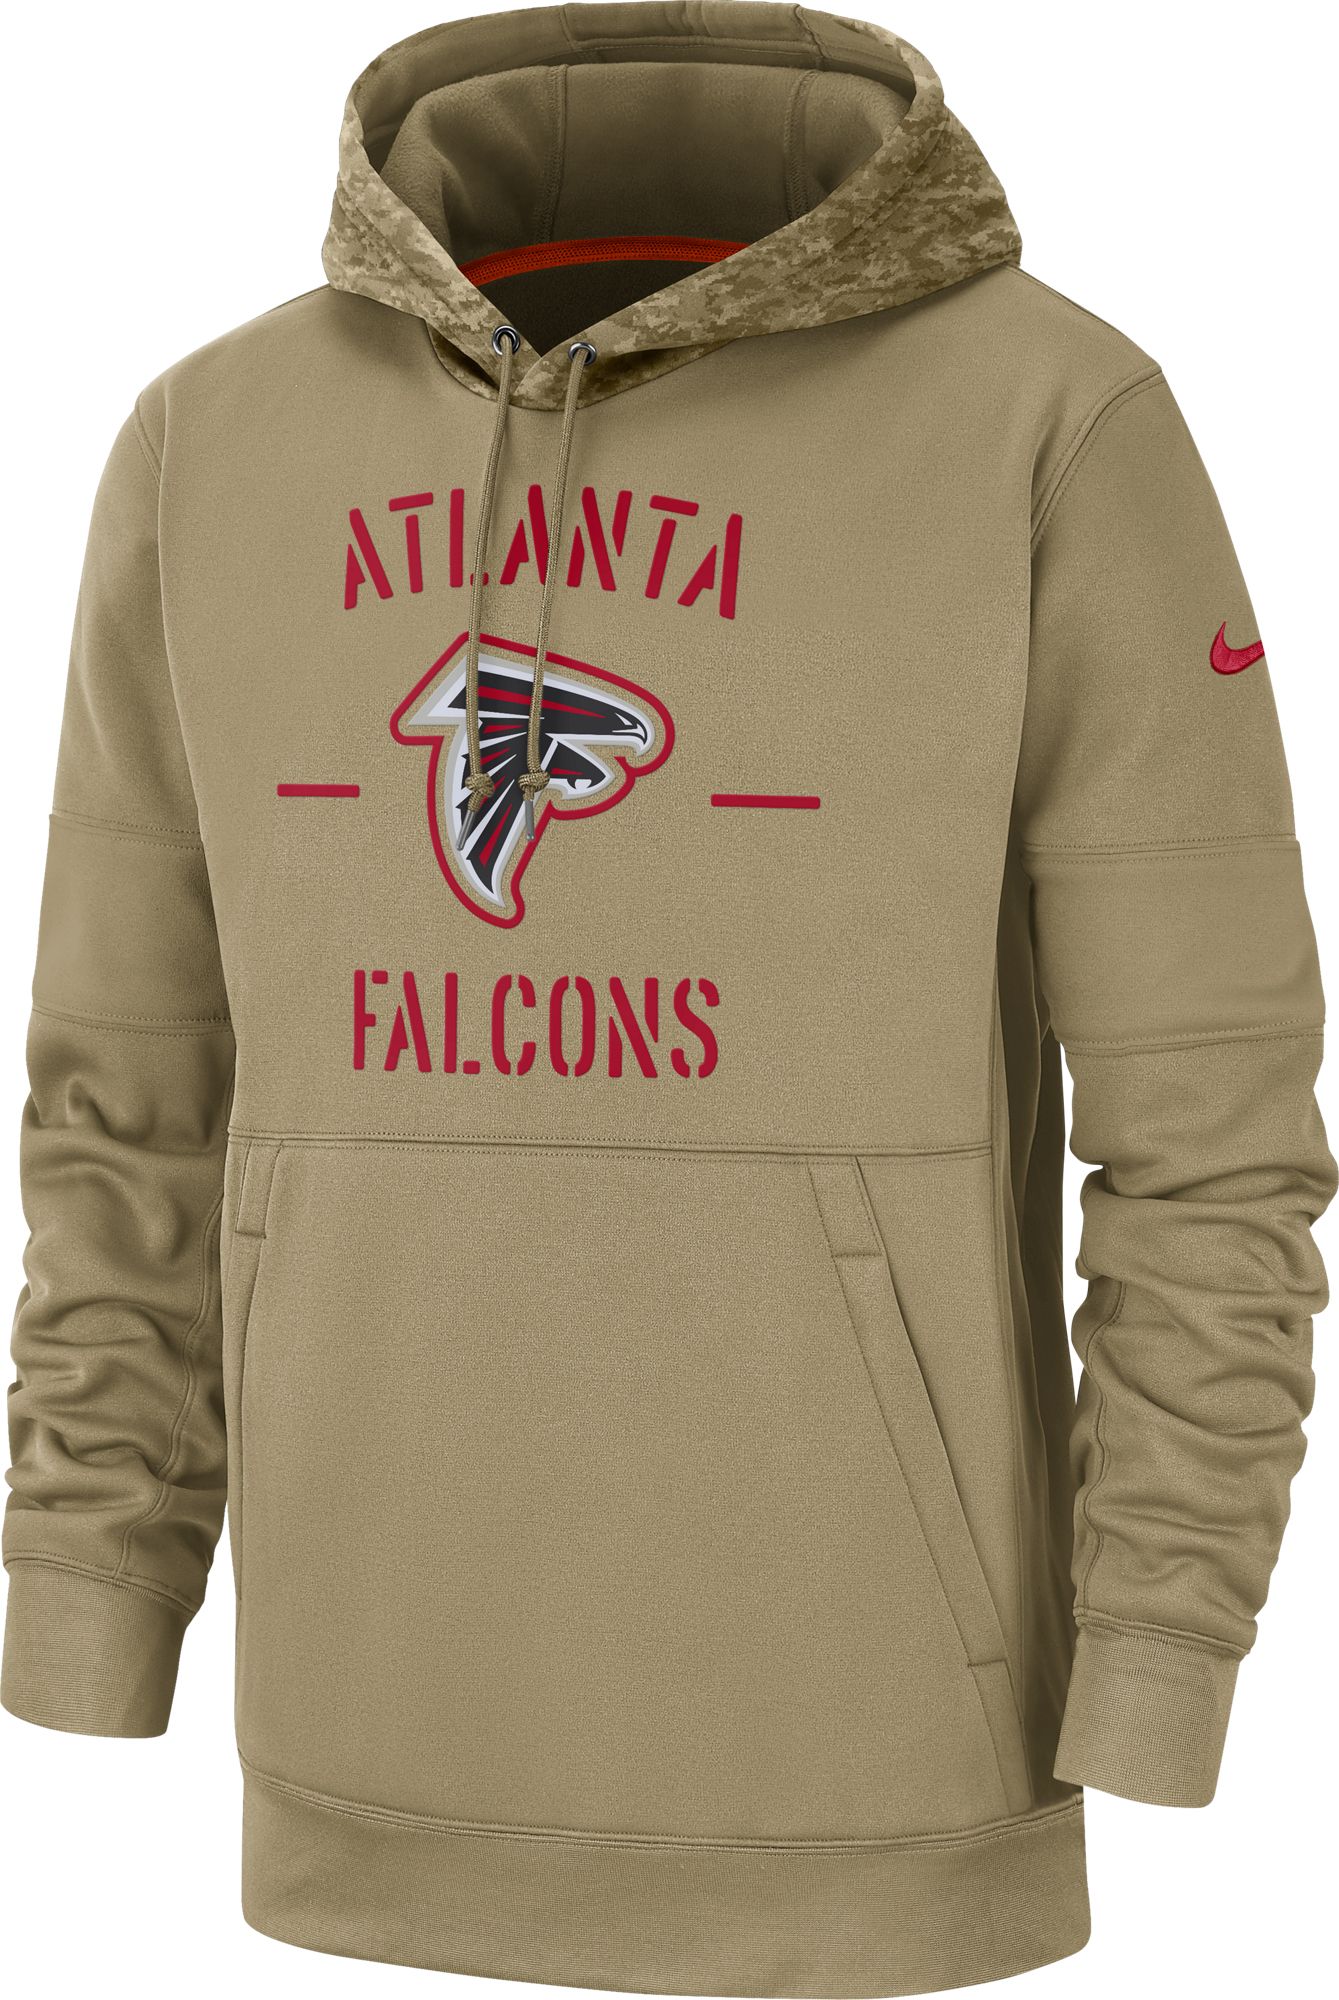 falcons camo hoodie